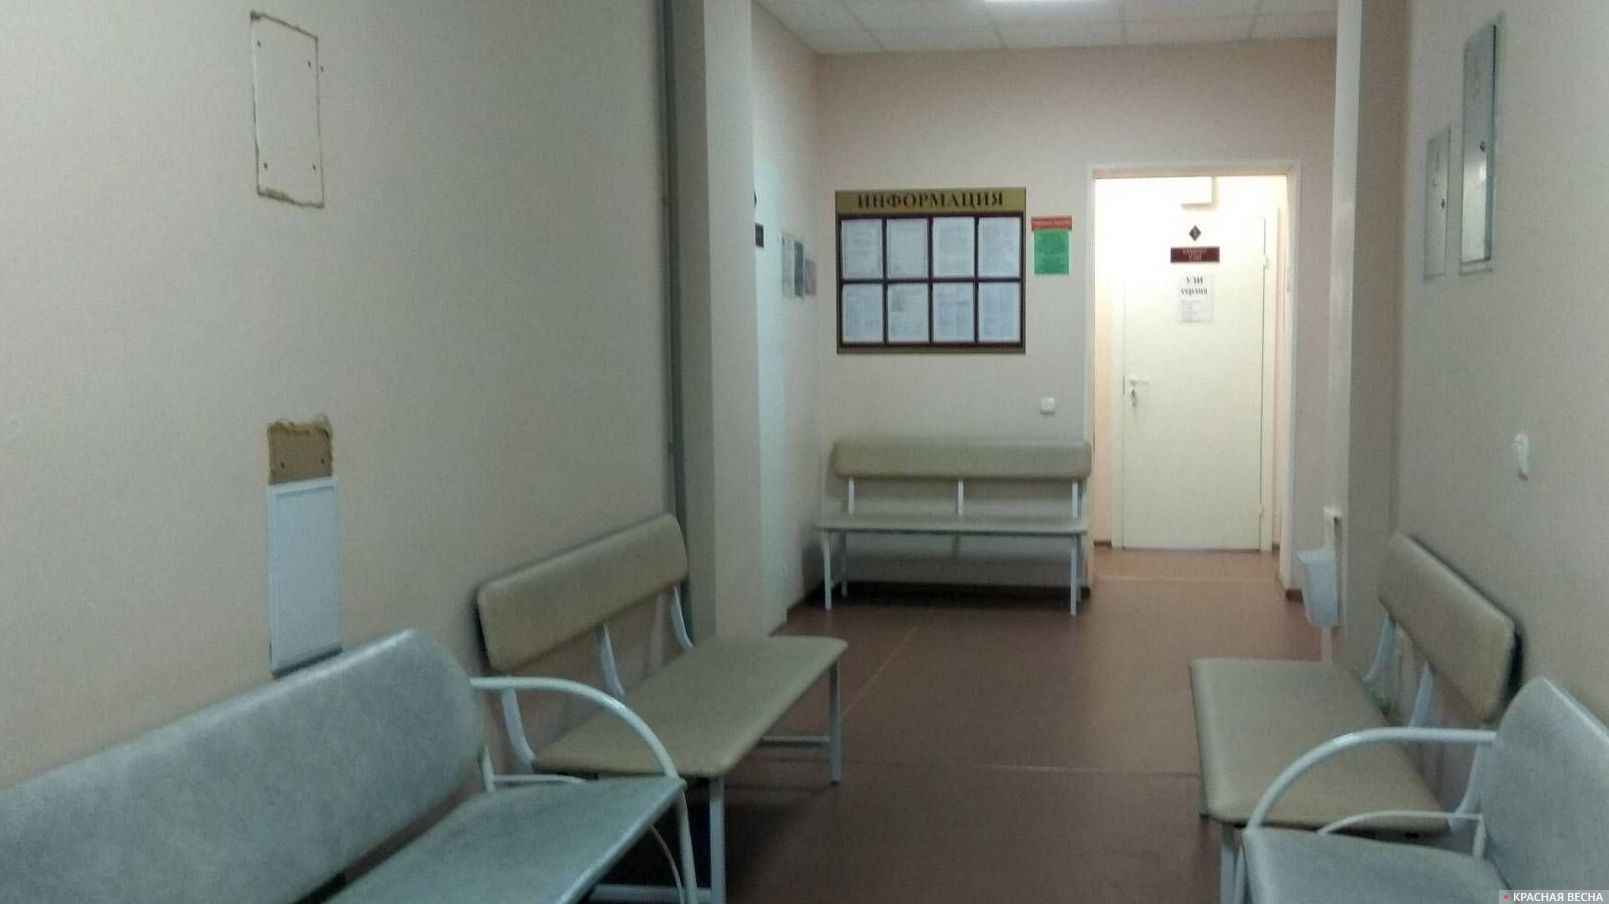 Пустой коридор отделения поликлиники